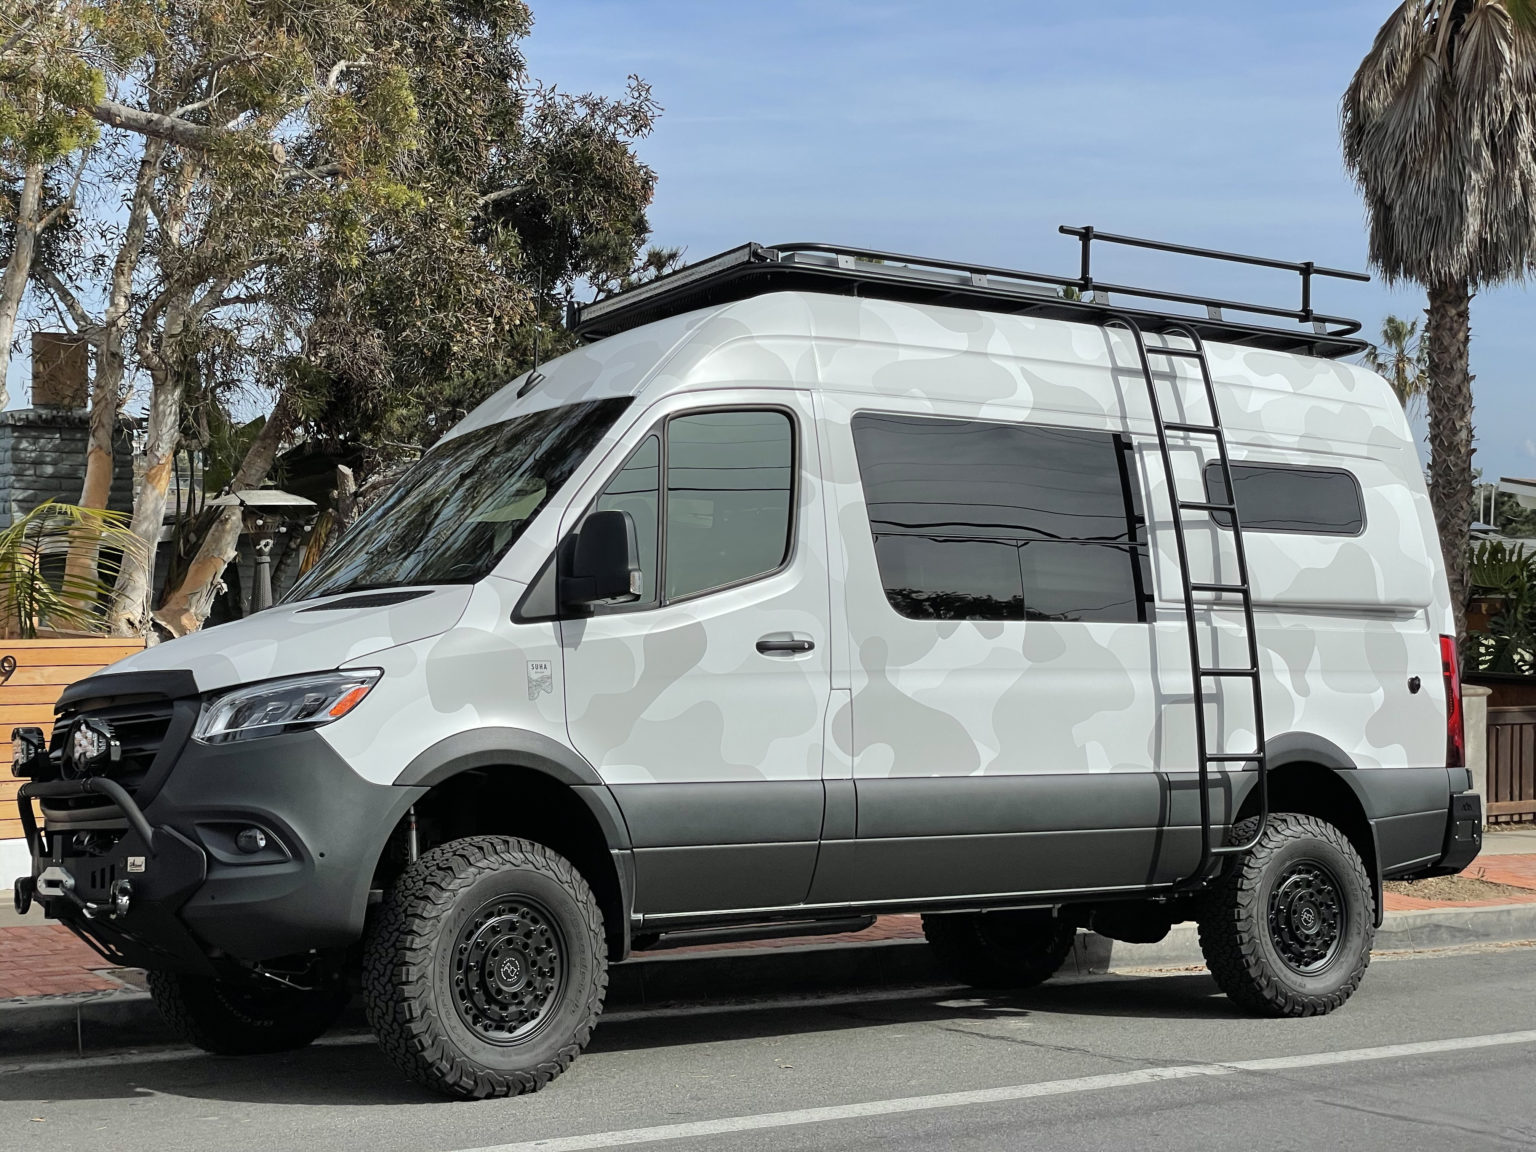 2020 Mercedes Sprinter Camper Van For Sale in Truckee, California Van